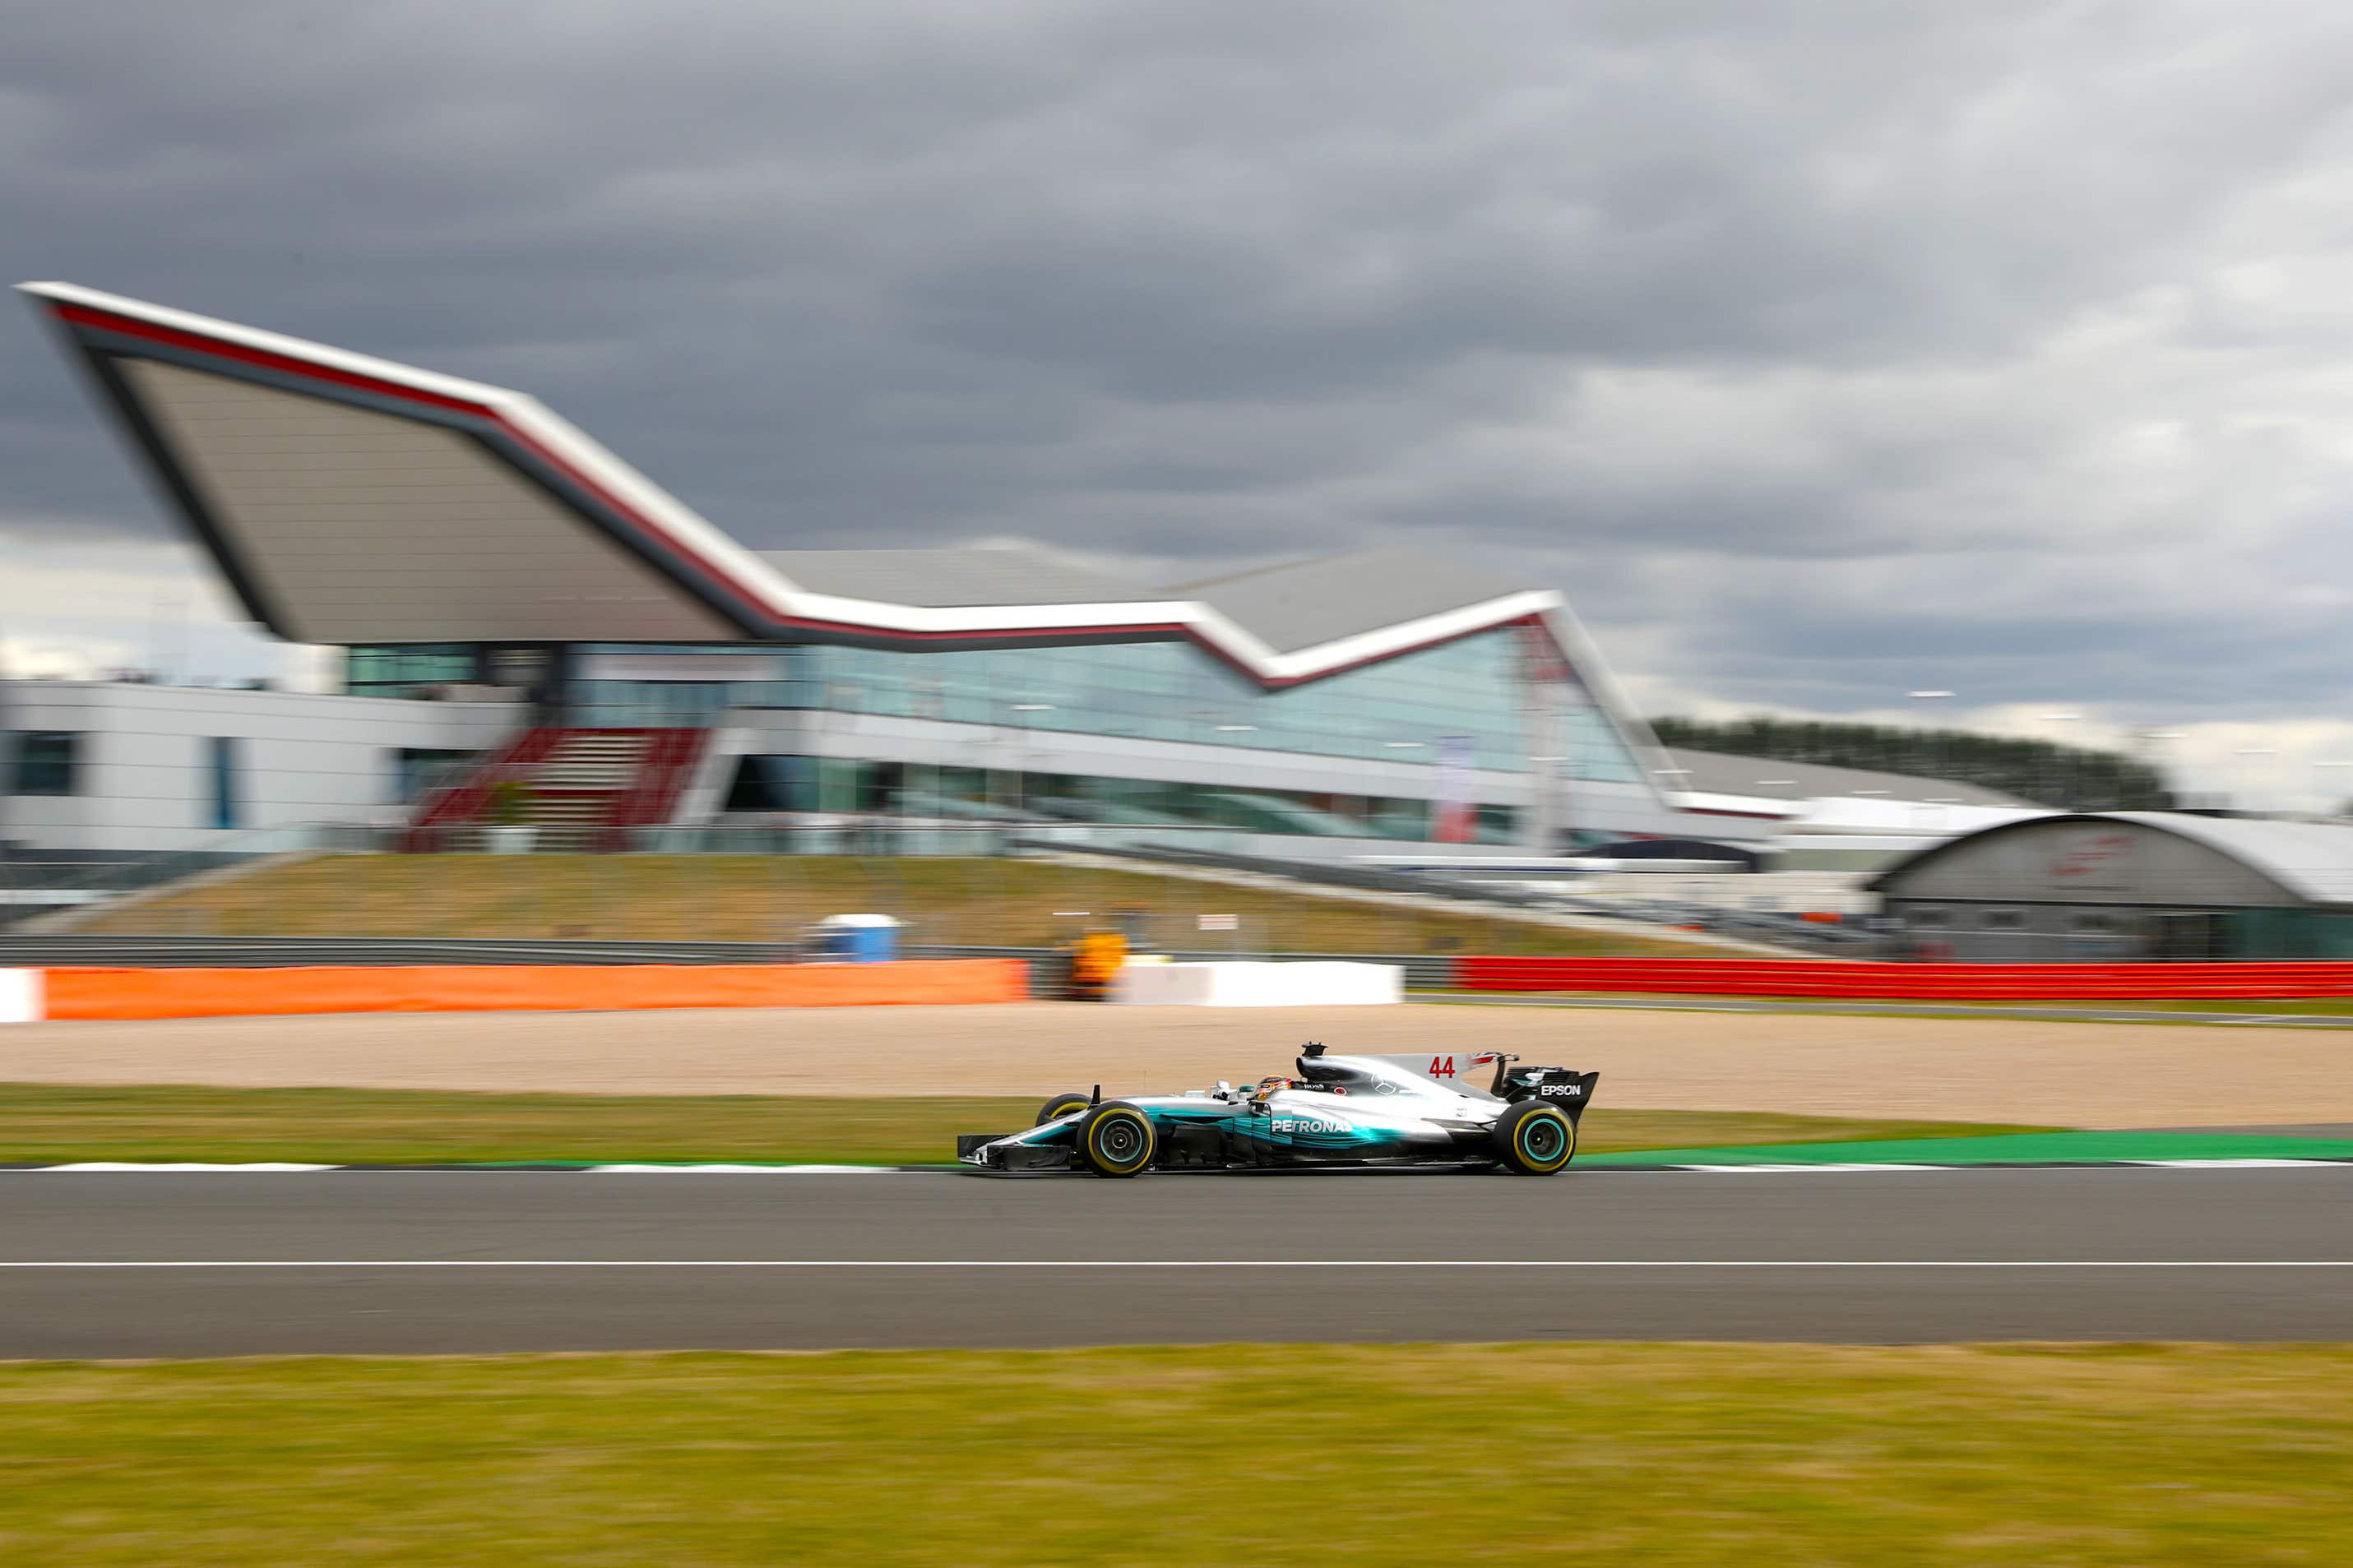 Lewis Hamilton at the 2017 British Grand Prix